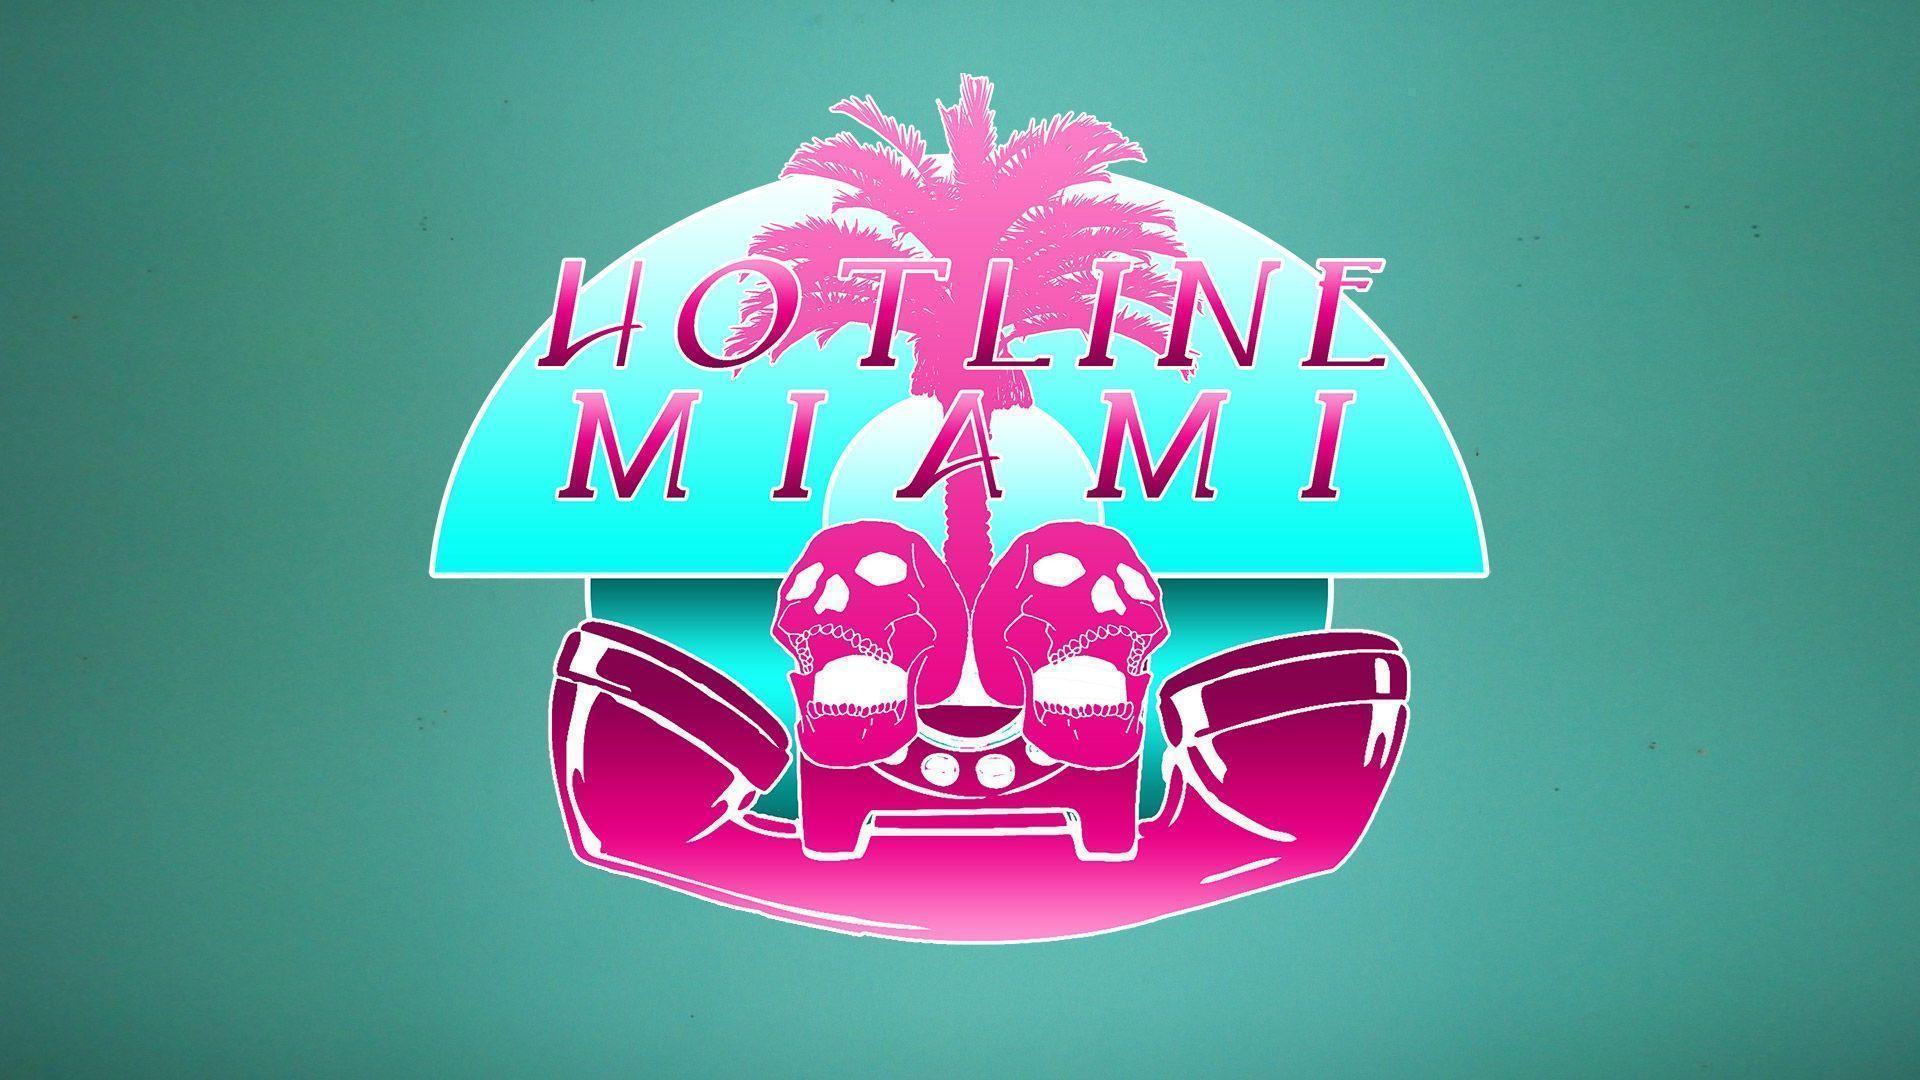 Hotline Miami 2 Wallpaper 1920x1080